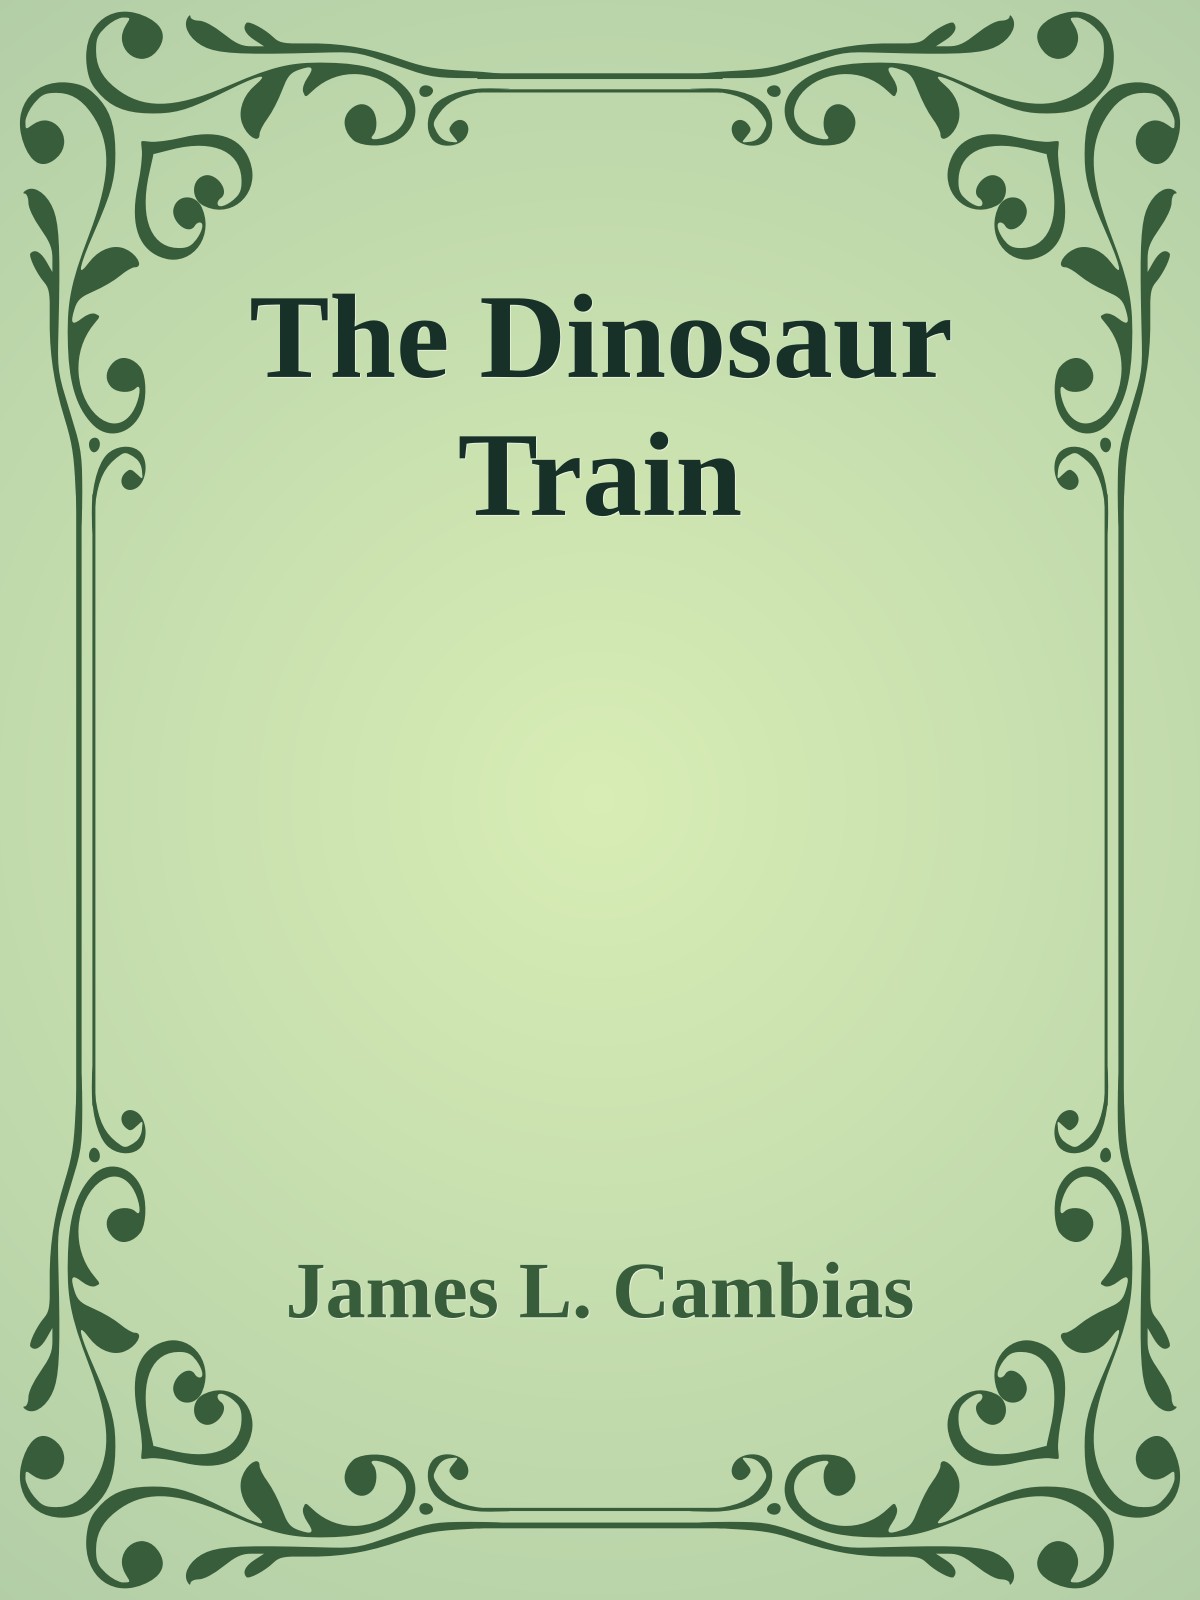 The Dinosaur Train